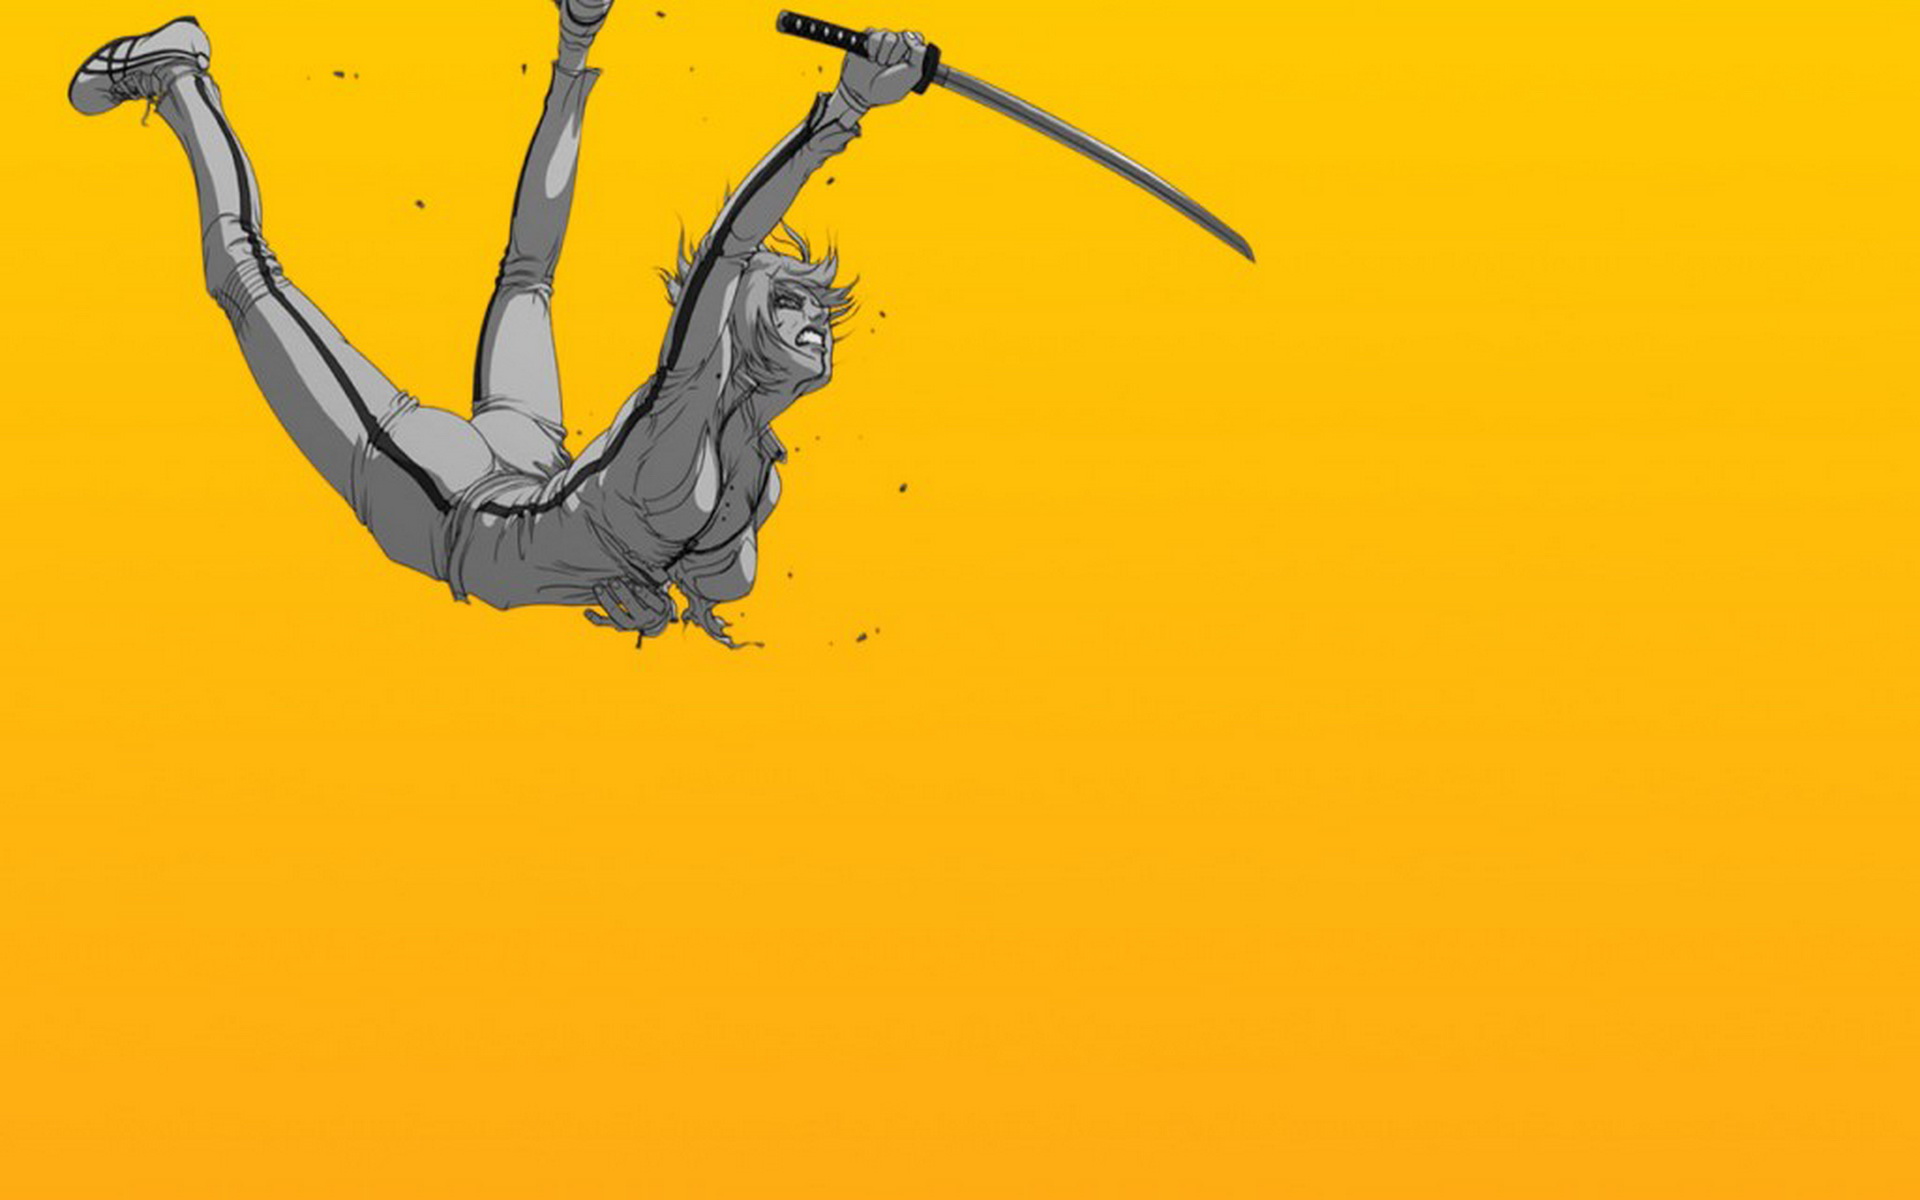 Kill Bill HD Wallpaper Background Image 1920x1200 1920x1200